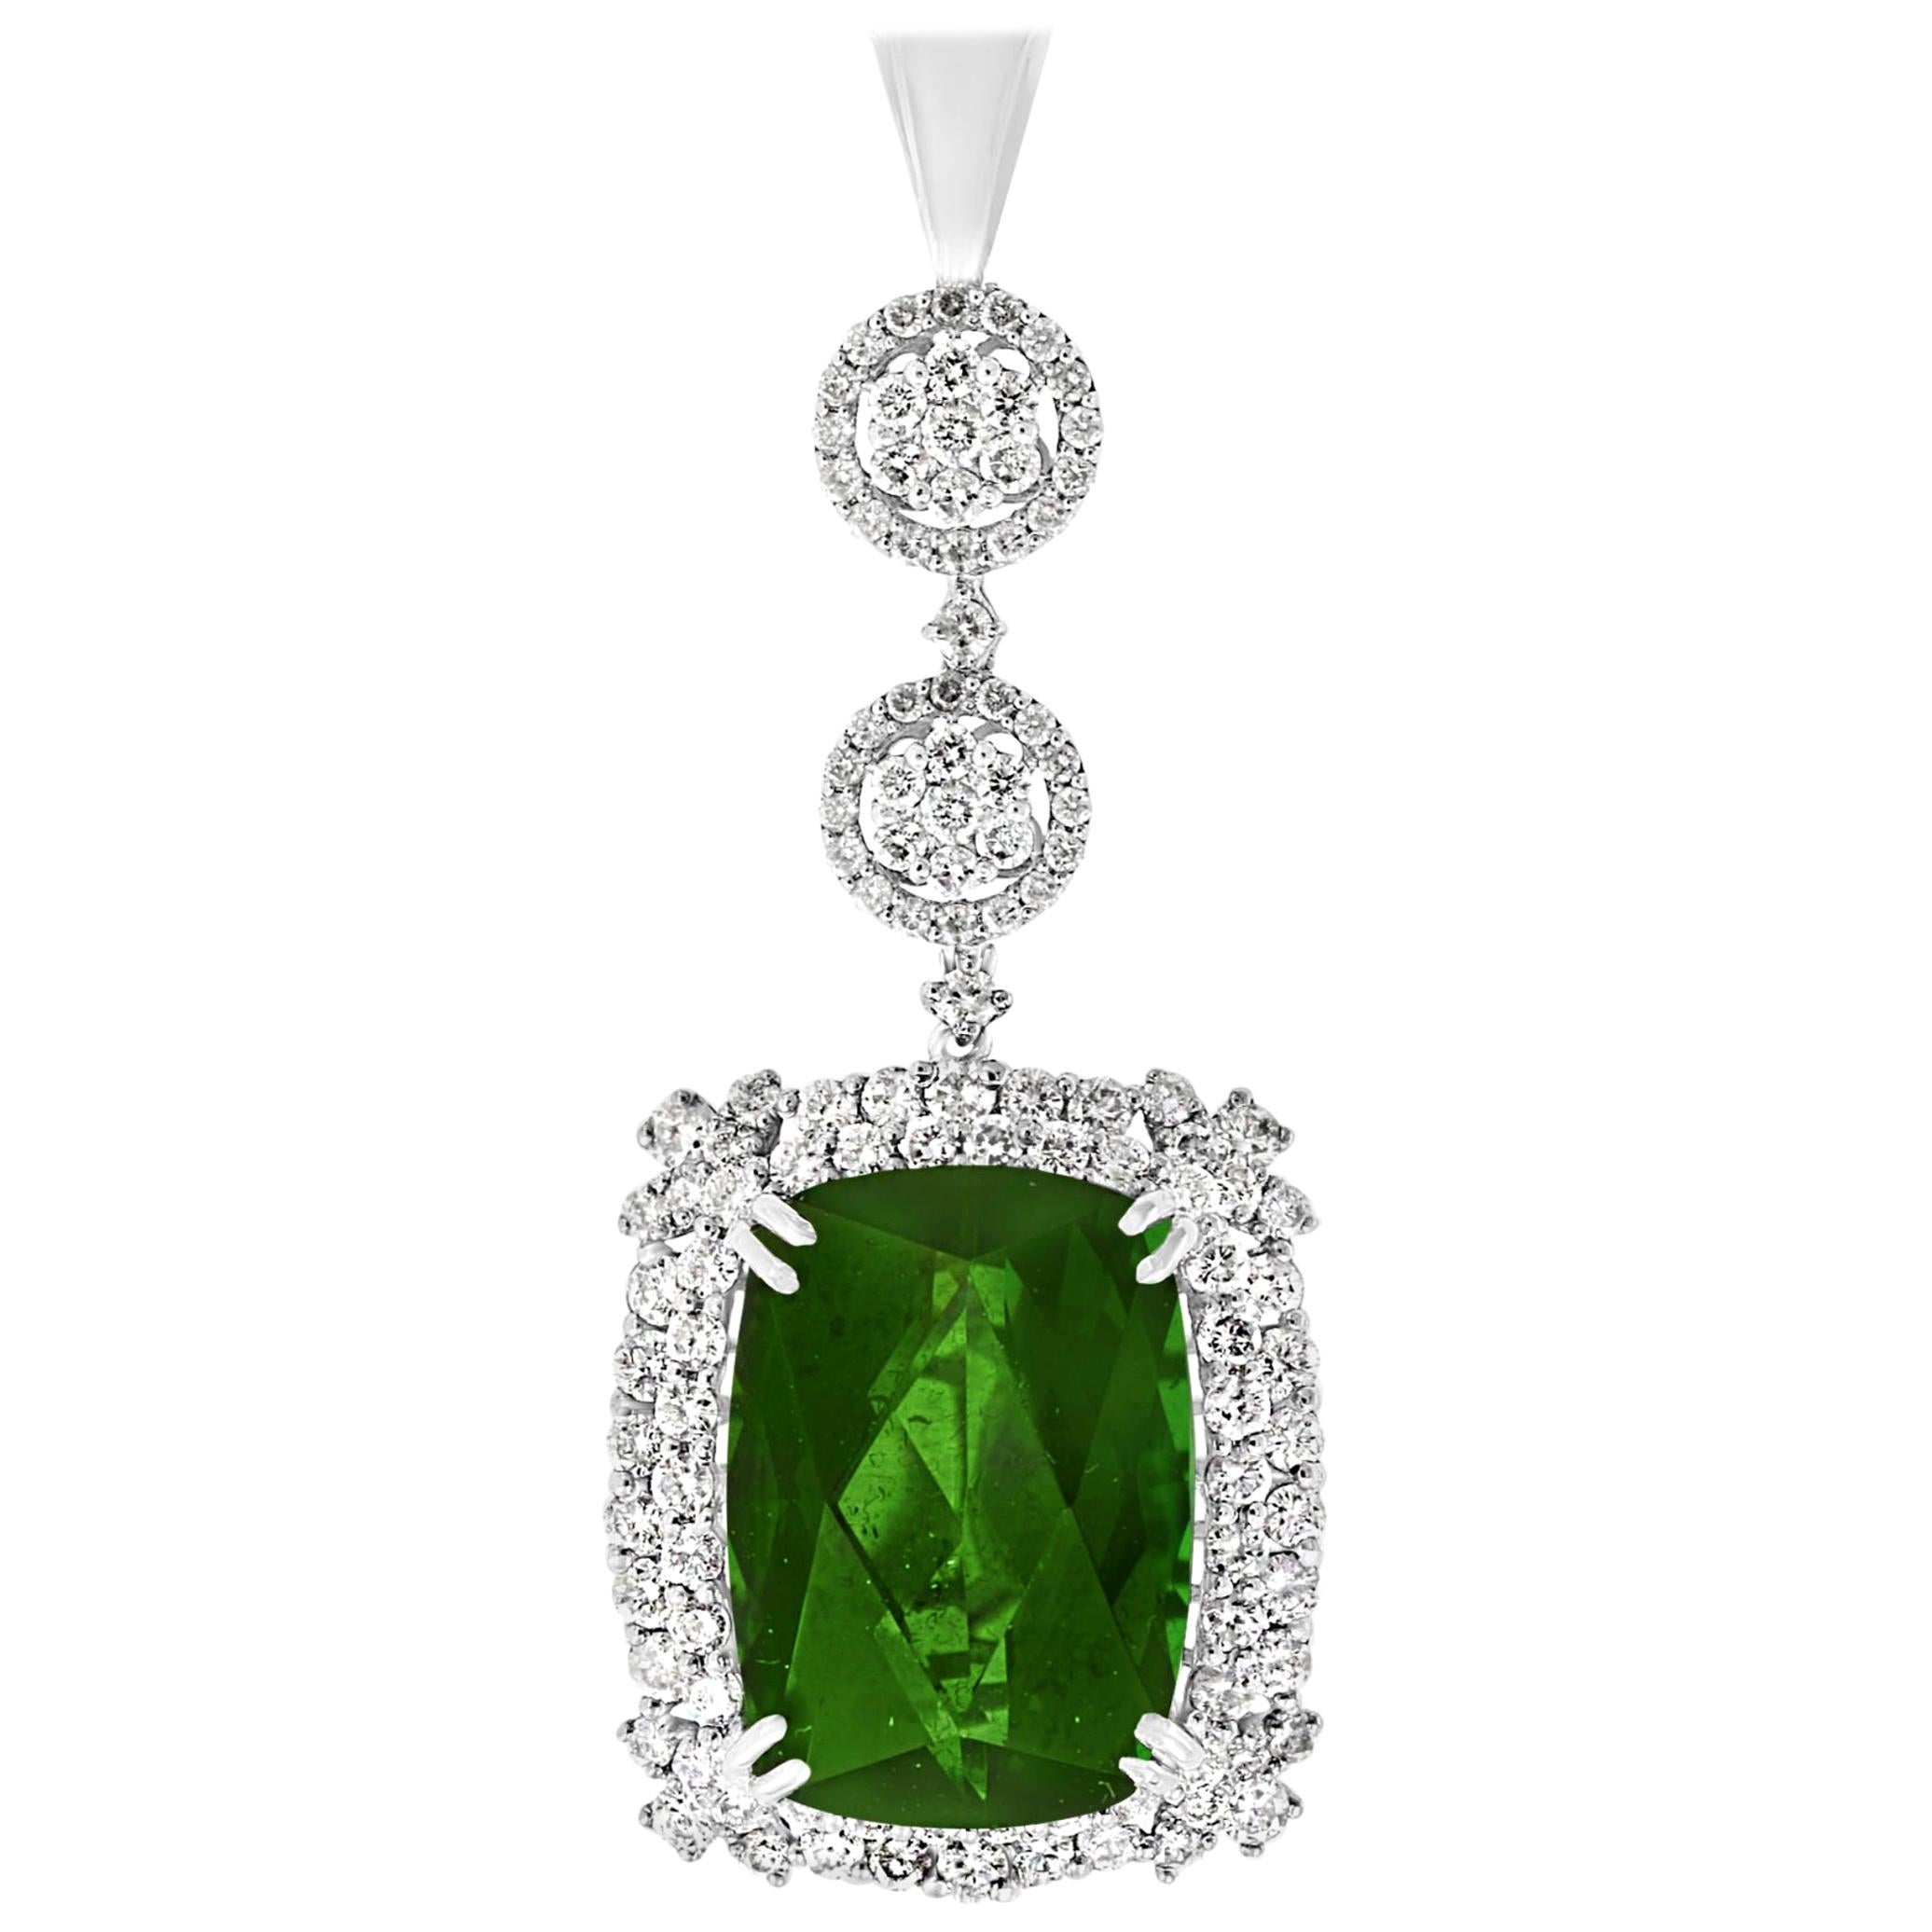 17 Carat Green Tourmaline and 4 Carat Diamond Pendant / Necklace 14 Karat Gold For Sale